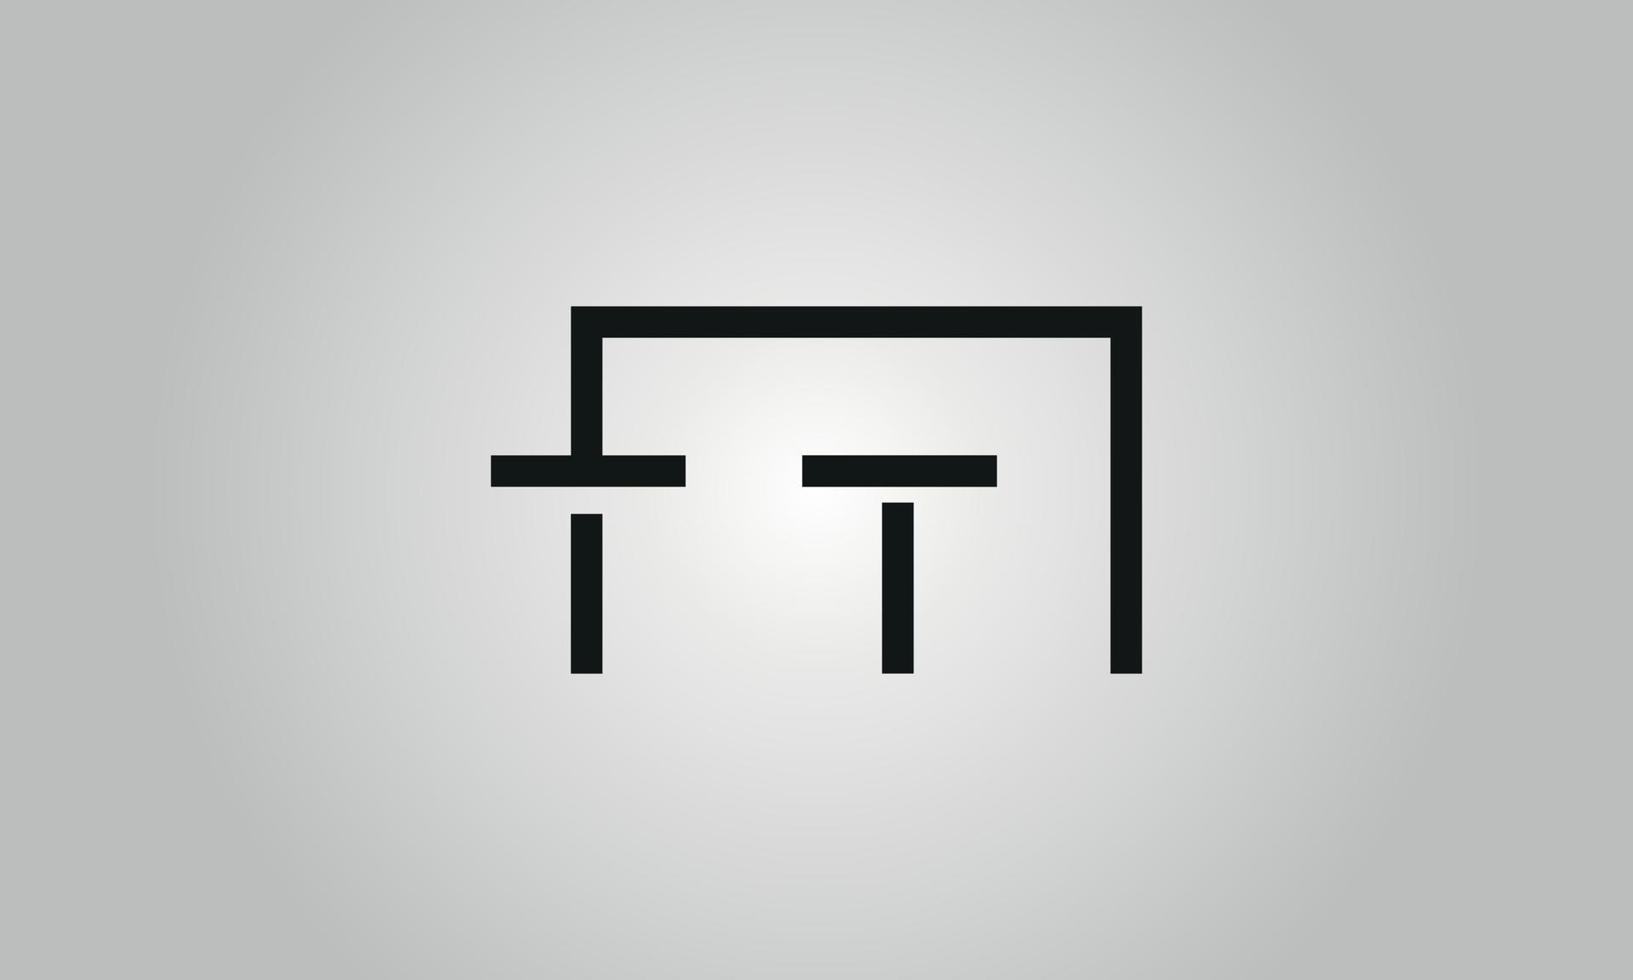 création de logo lettre tt. logo tt avec forme carrée dans le modèle vectoriel gratuit de couleurs noires.